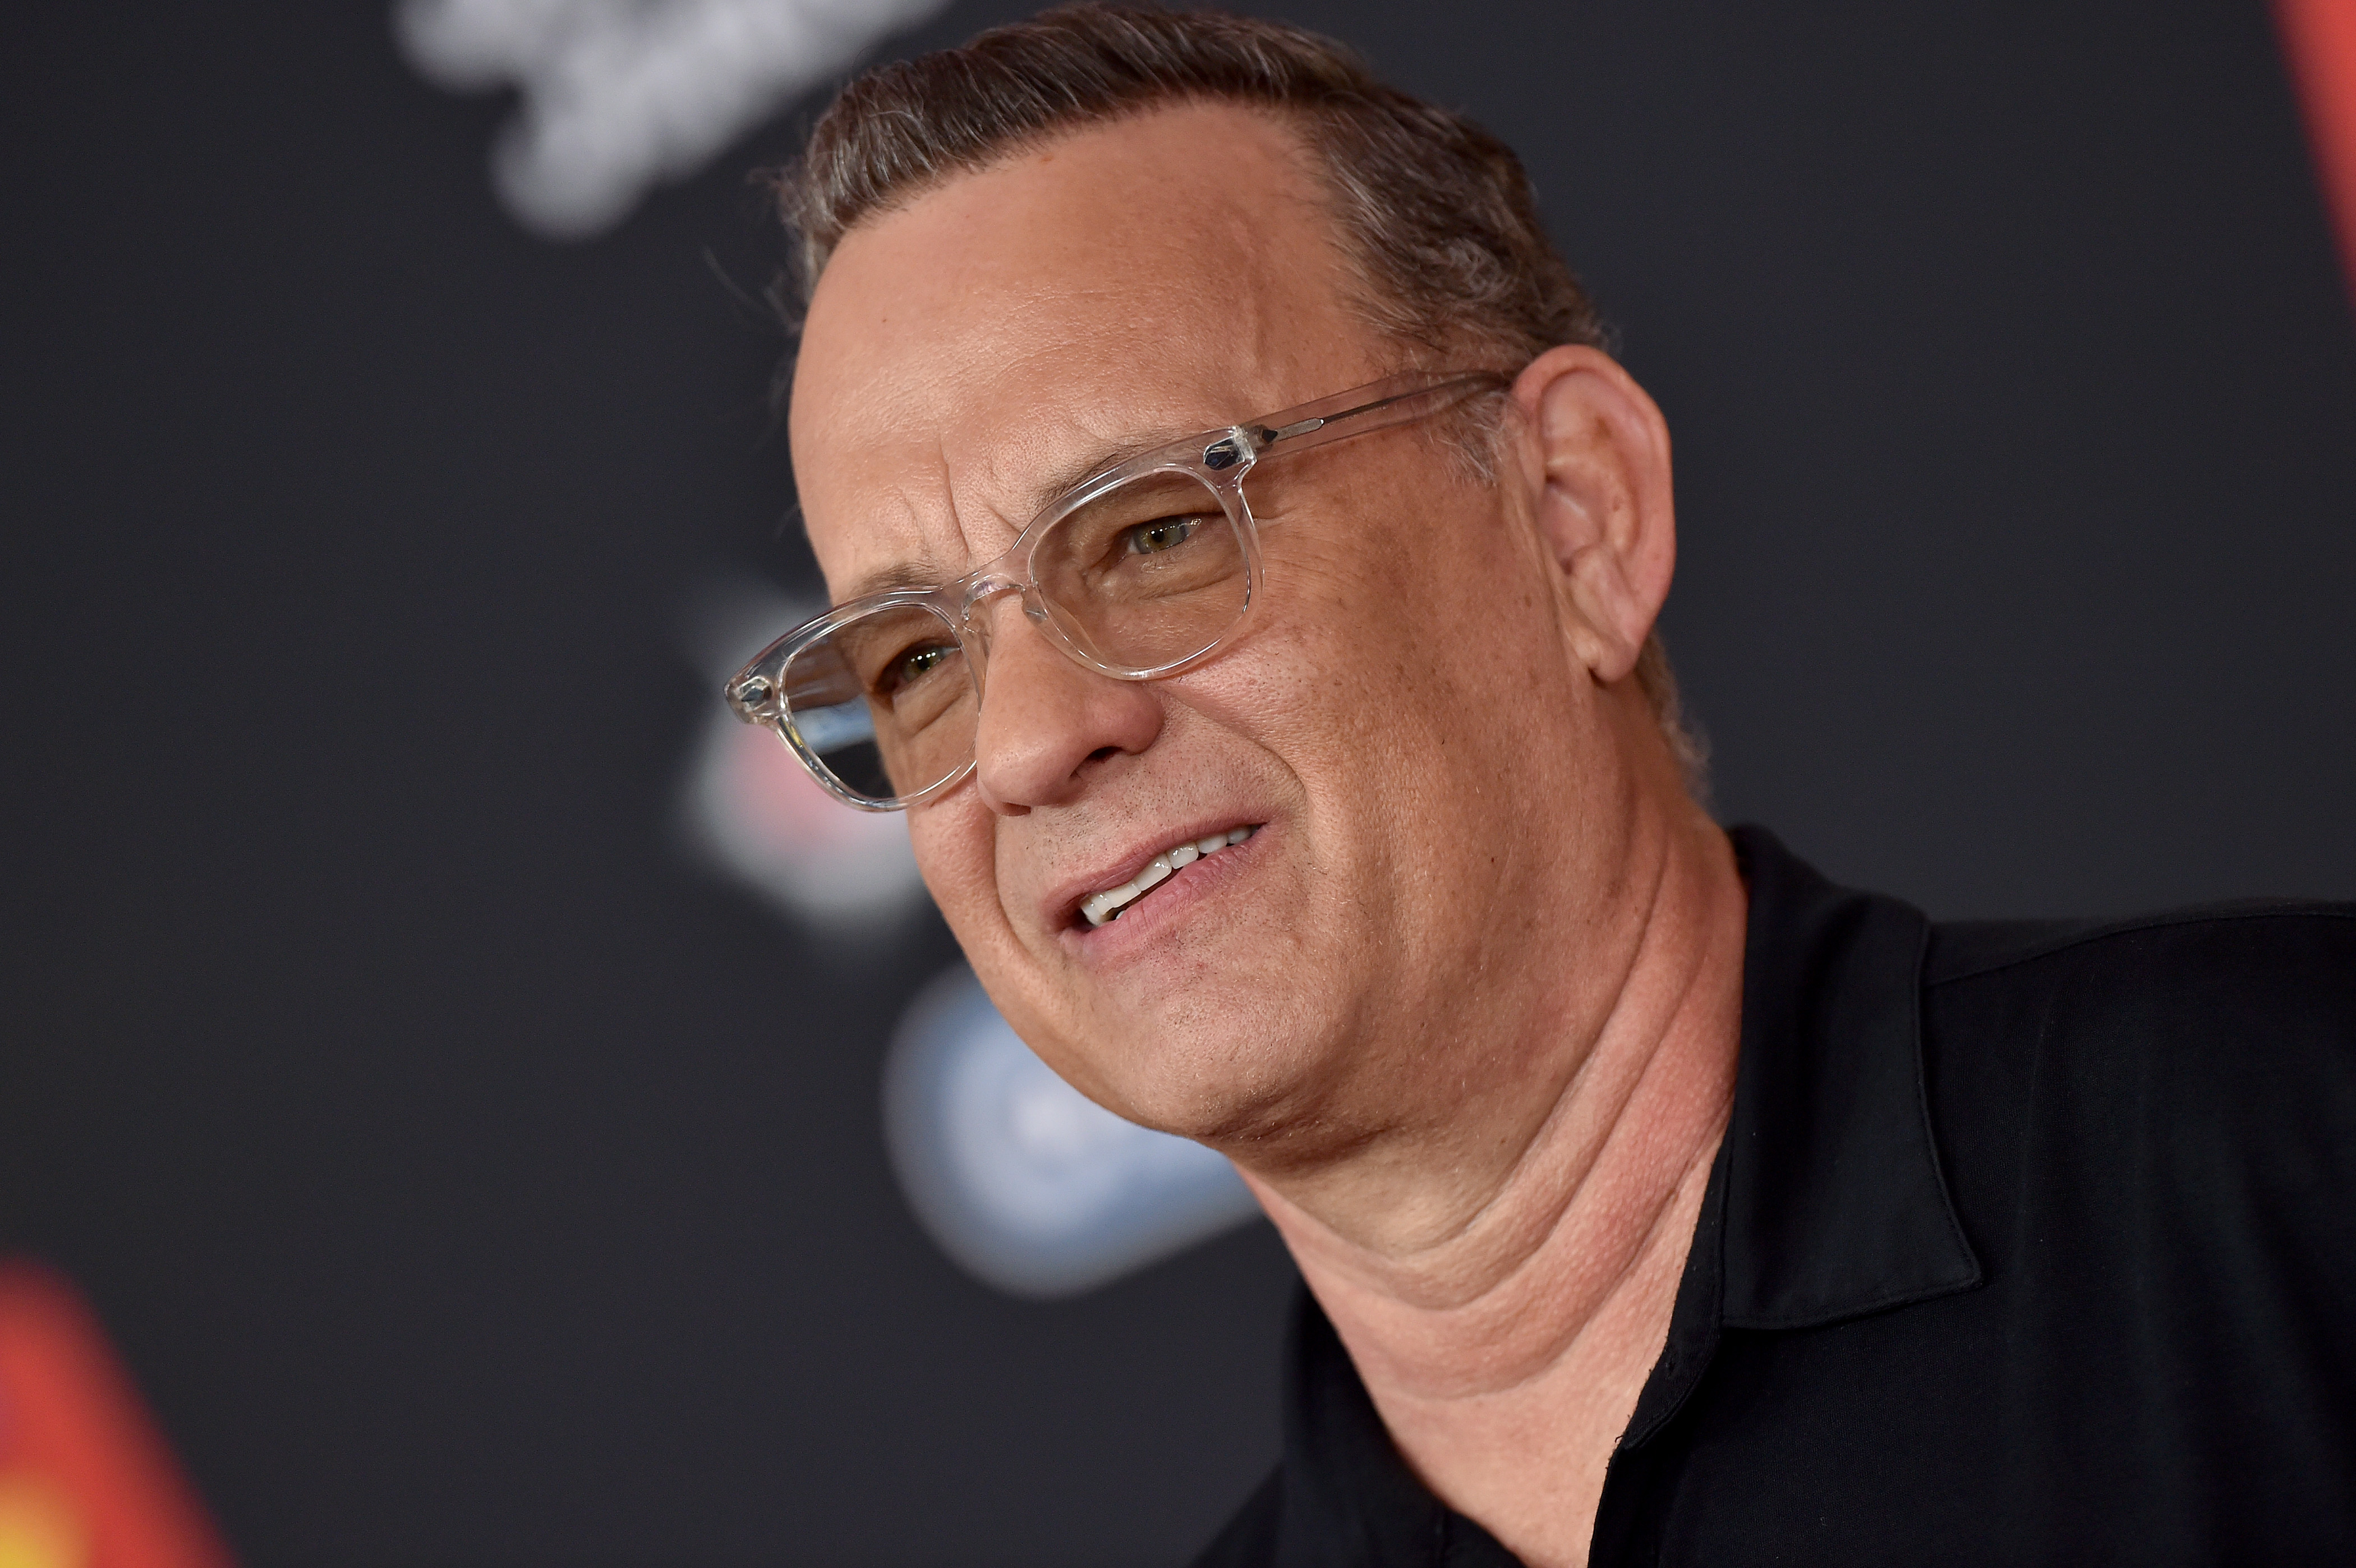 Tom Hanks wearing glasses